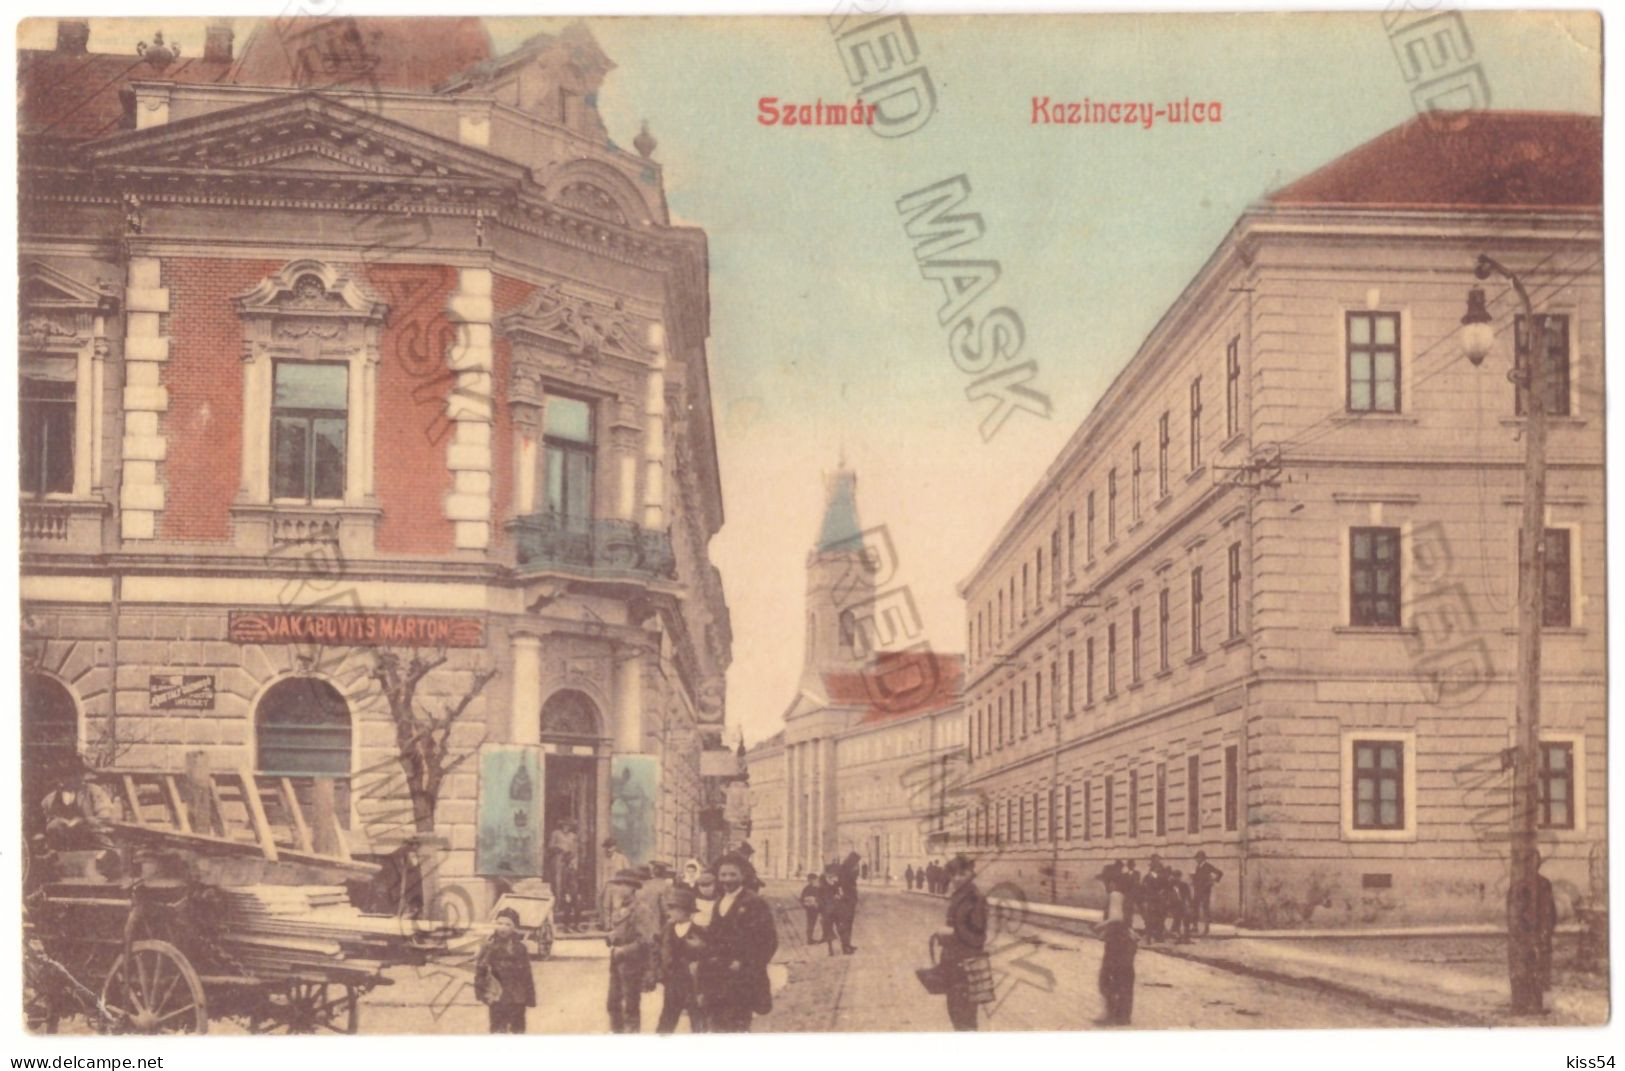 RO 91 - 25564 SATU MARE, Maramures, Market, Romania - Old Postcard - Used - 1908 - Roemenië